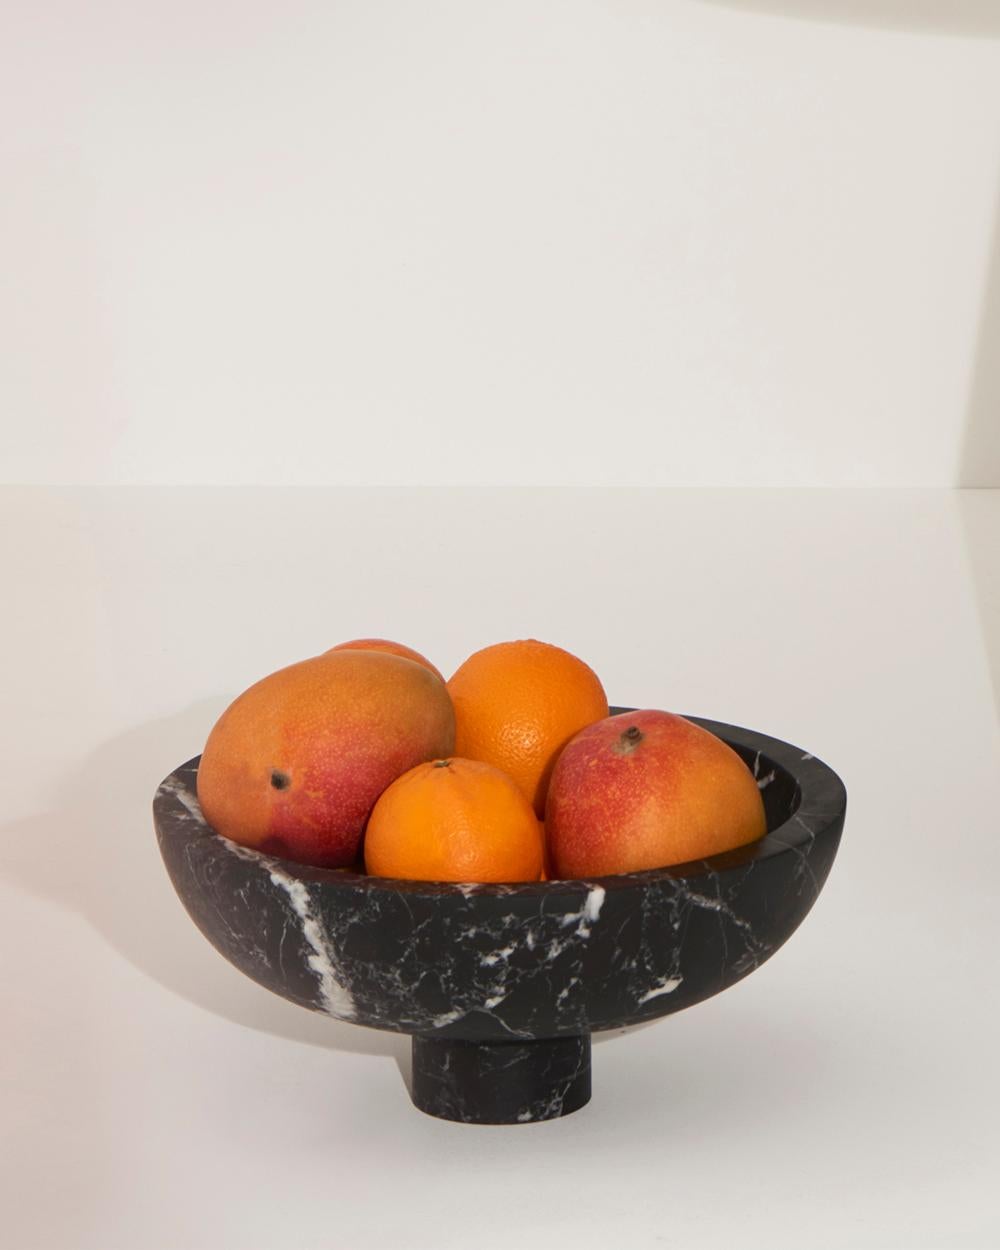 Innenliegende Obstschale aus schwarzem Marquinia-Marmor, entworfen von der international bekannten Designerin Karen Chekerdjian - sie ist auch in anderen Farben erhältlich.
Es ist Teil der Inside Out Collection - Tische und Accessoires (Obstschalen,